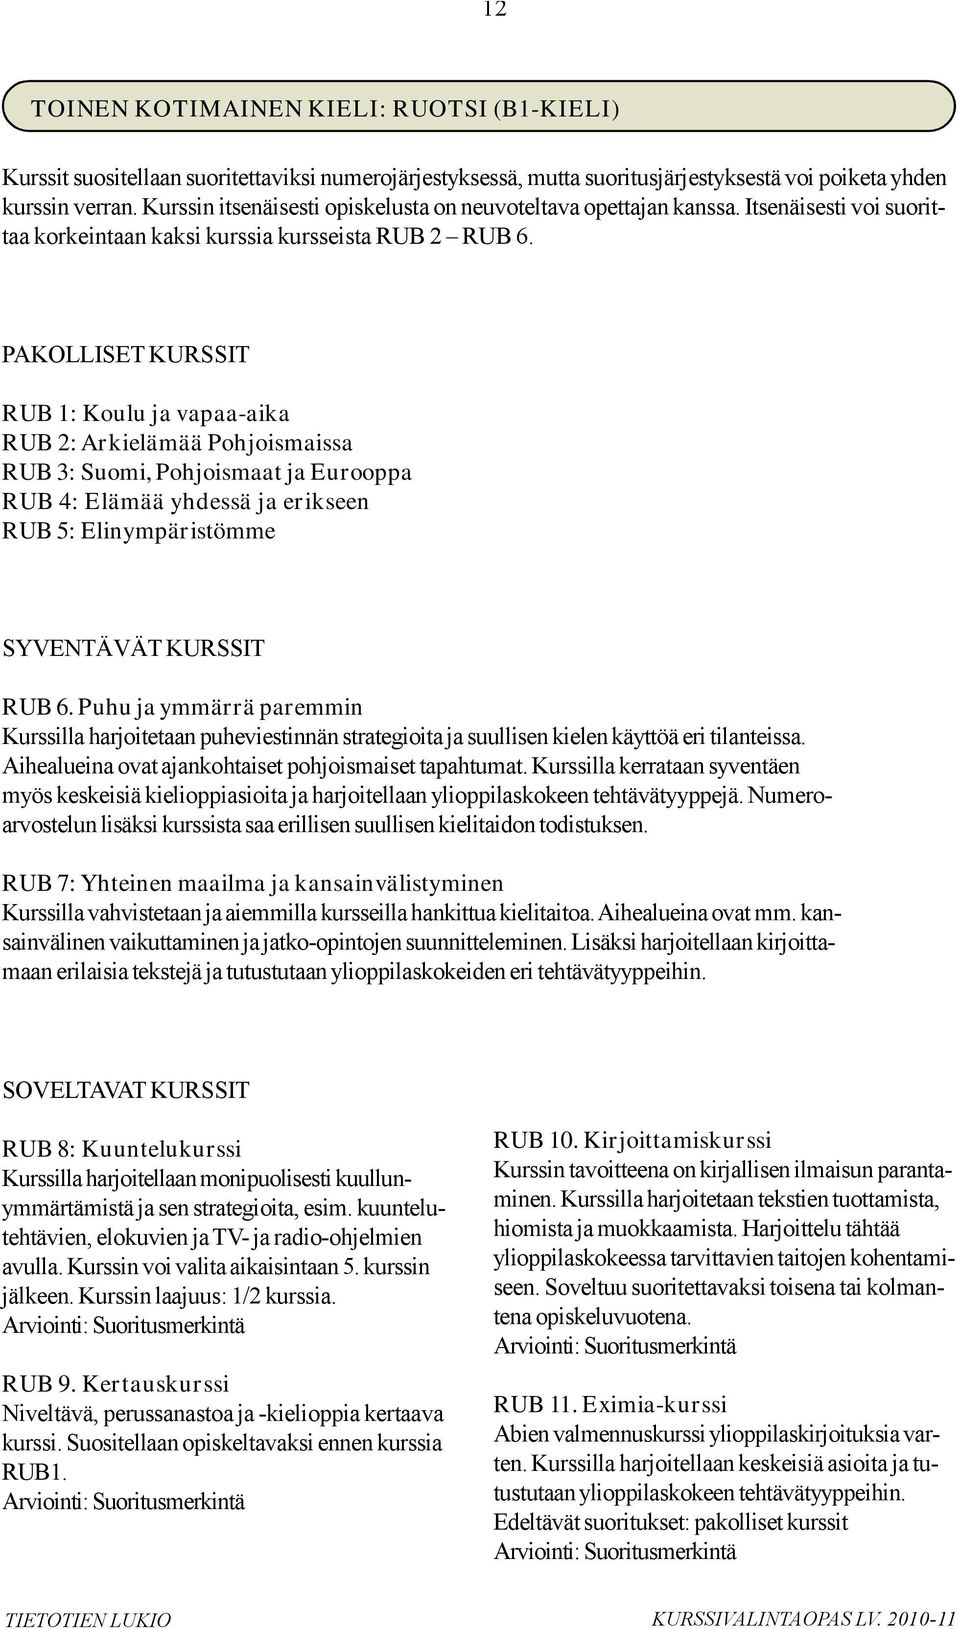 PAKOLLISET KURSSIT RUB 1: Koulu ja vapaa-aika RUB 2: Arkielämää Pohjoismaissa RUB 3: Suomi, Pohjoismaat ja Eurooppa RUB 4: Elämää yhdessä ja erikseen RUB 5: Elinympäristömme SYVENTÄVÄT KURSSIT RUB 6.